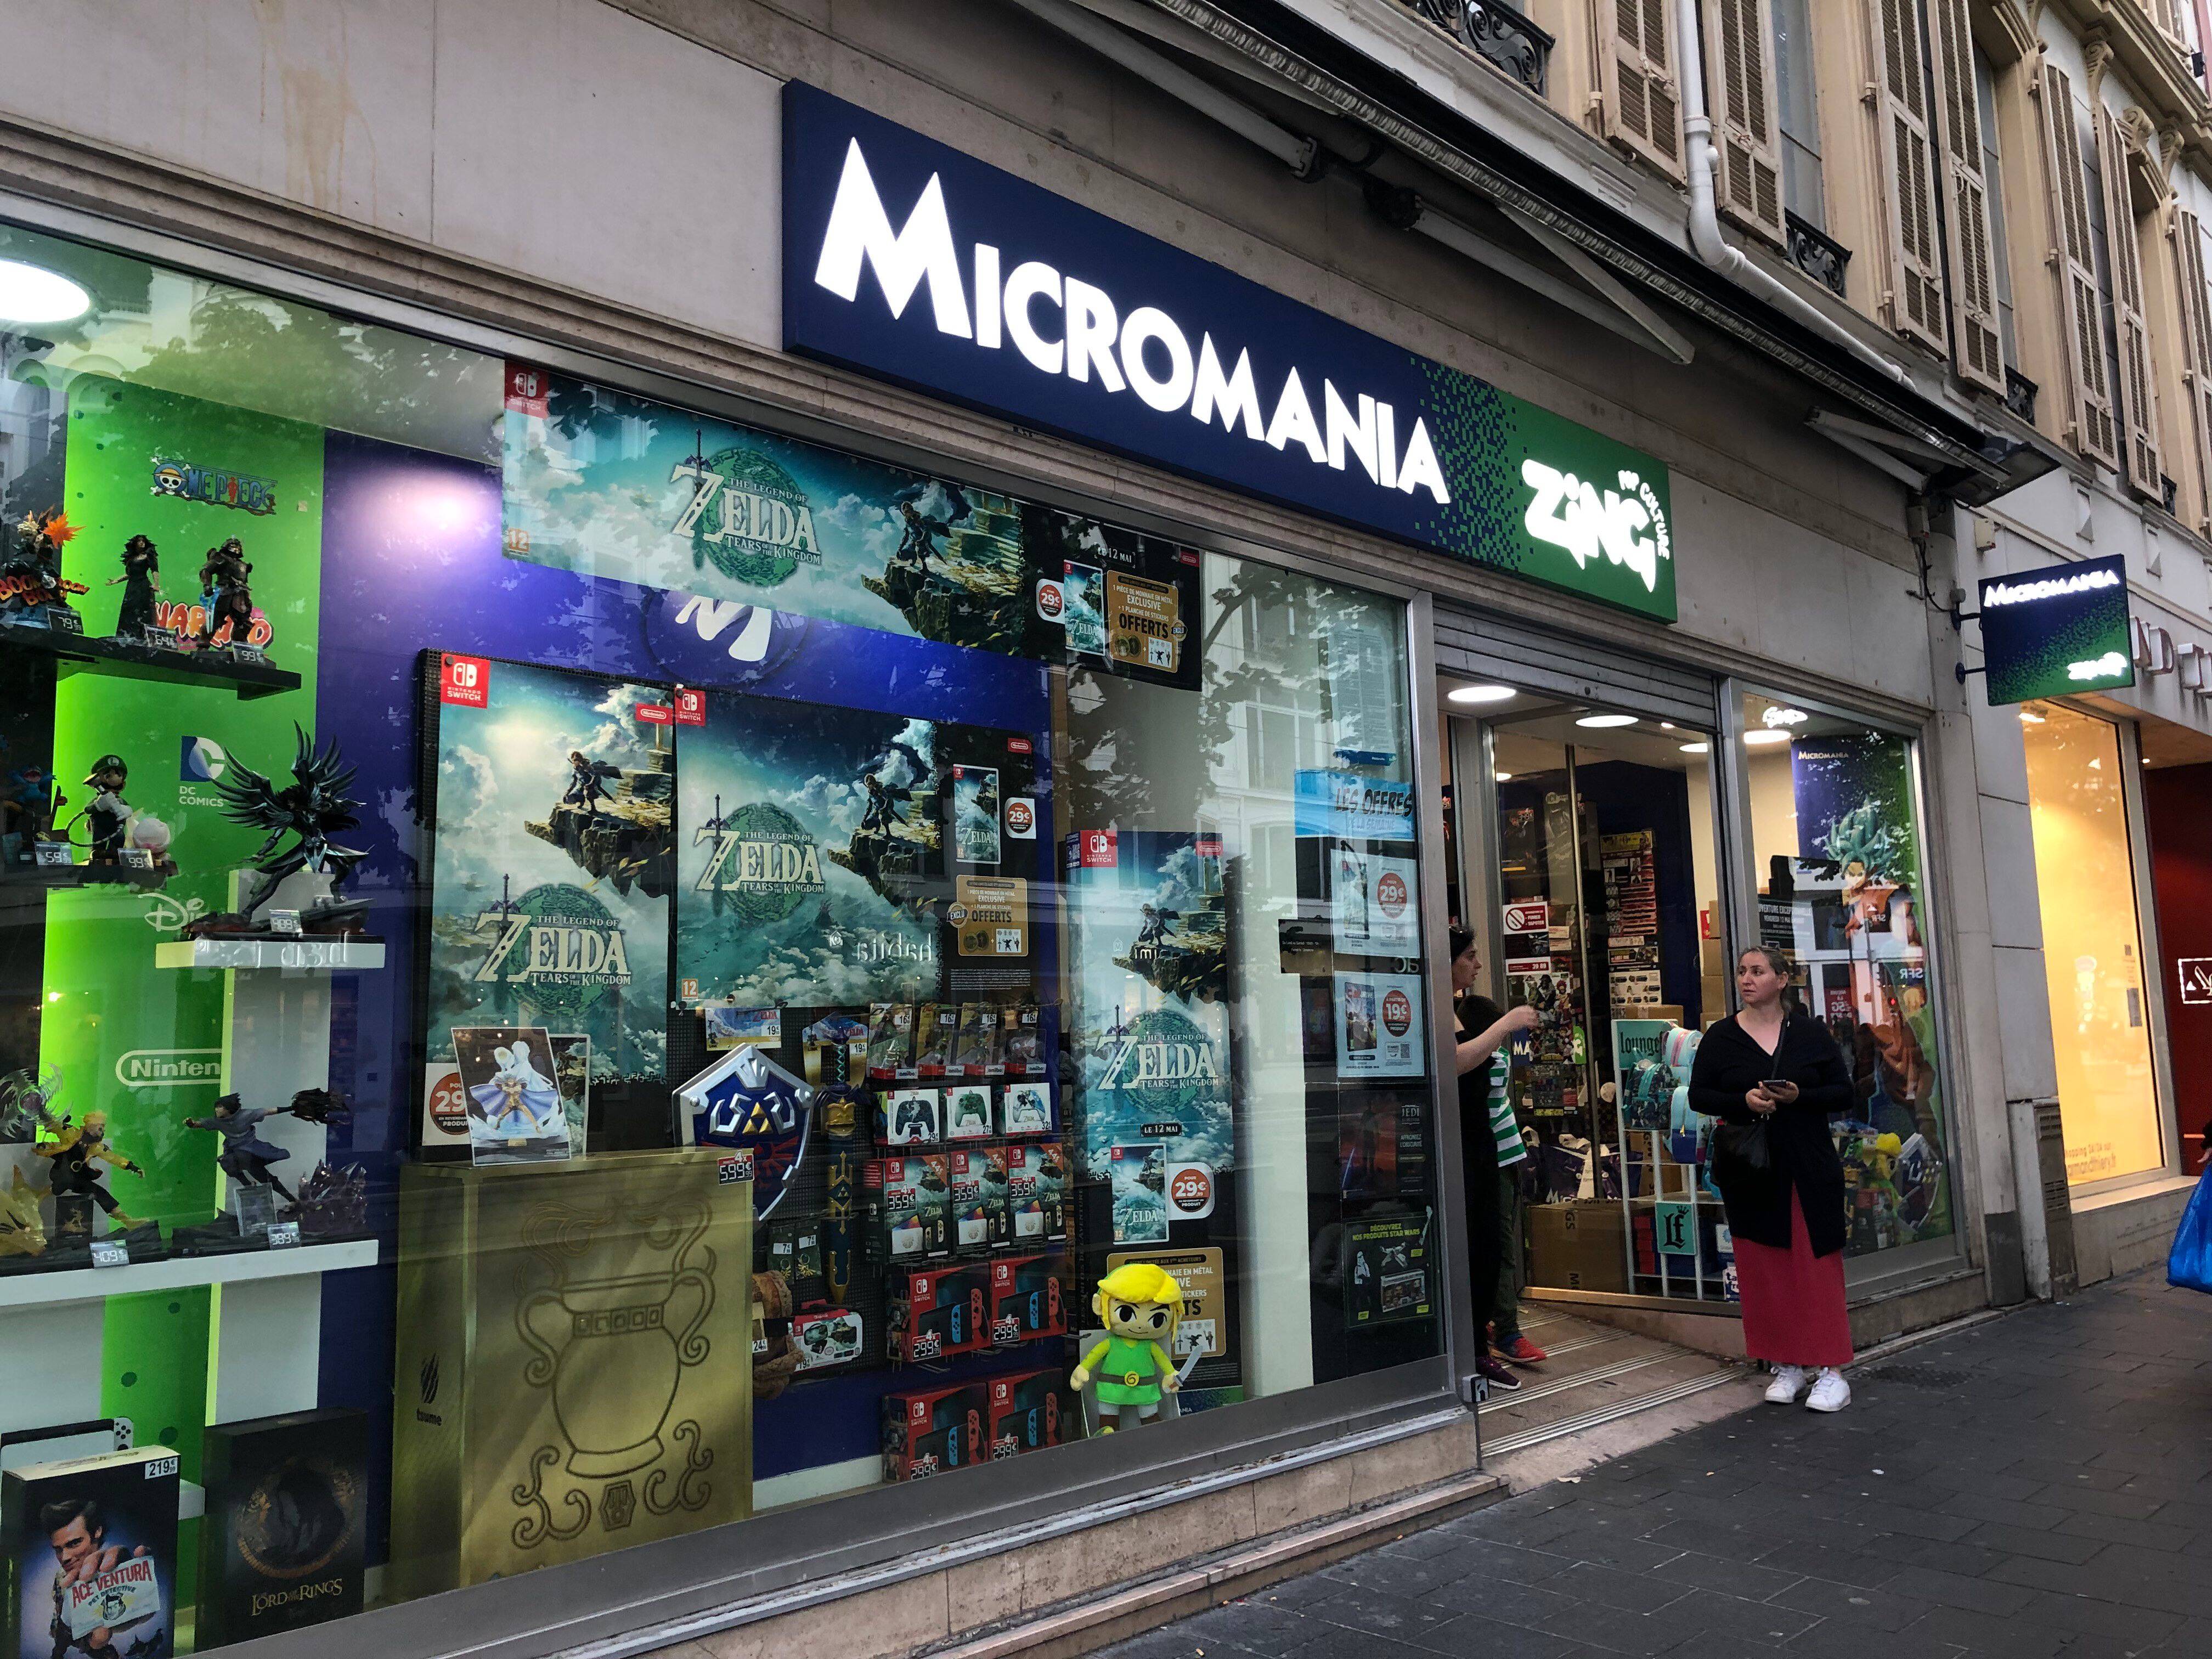 “Lo aspettavamo da tempo”: spieghiamo perché il negozio Micromania nel centro di Nizza apre dalla mezzanotte di questo giovedì.